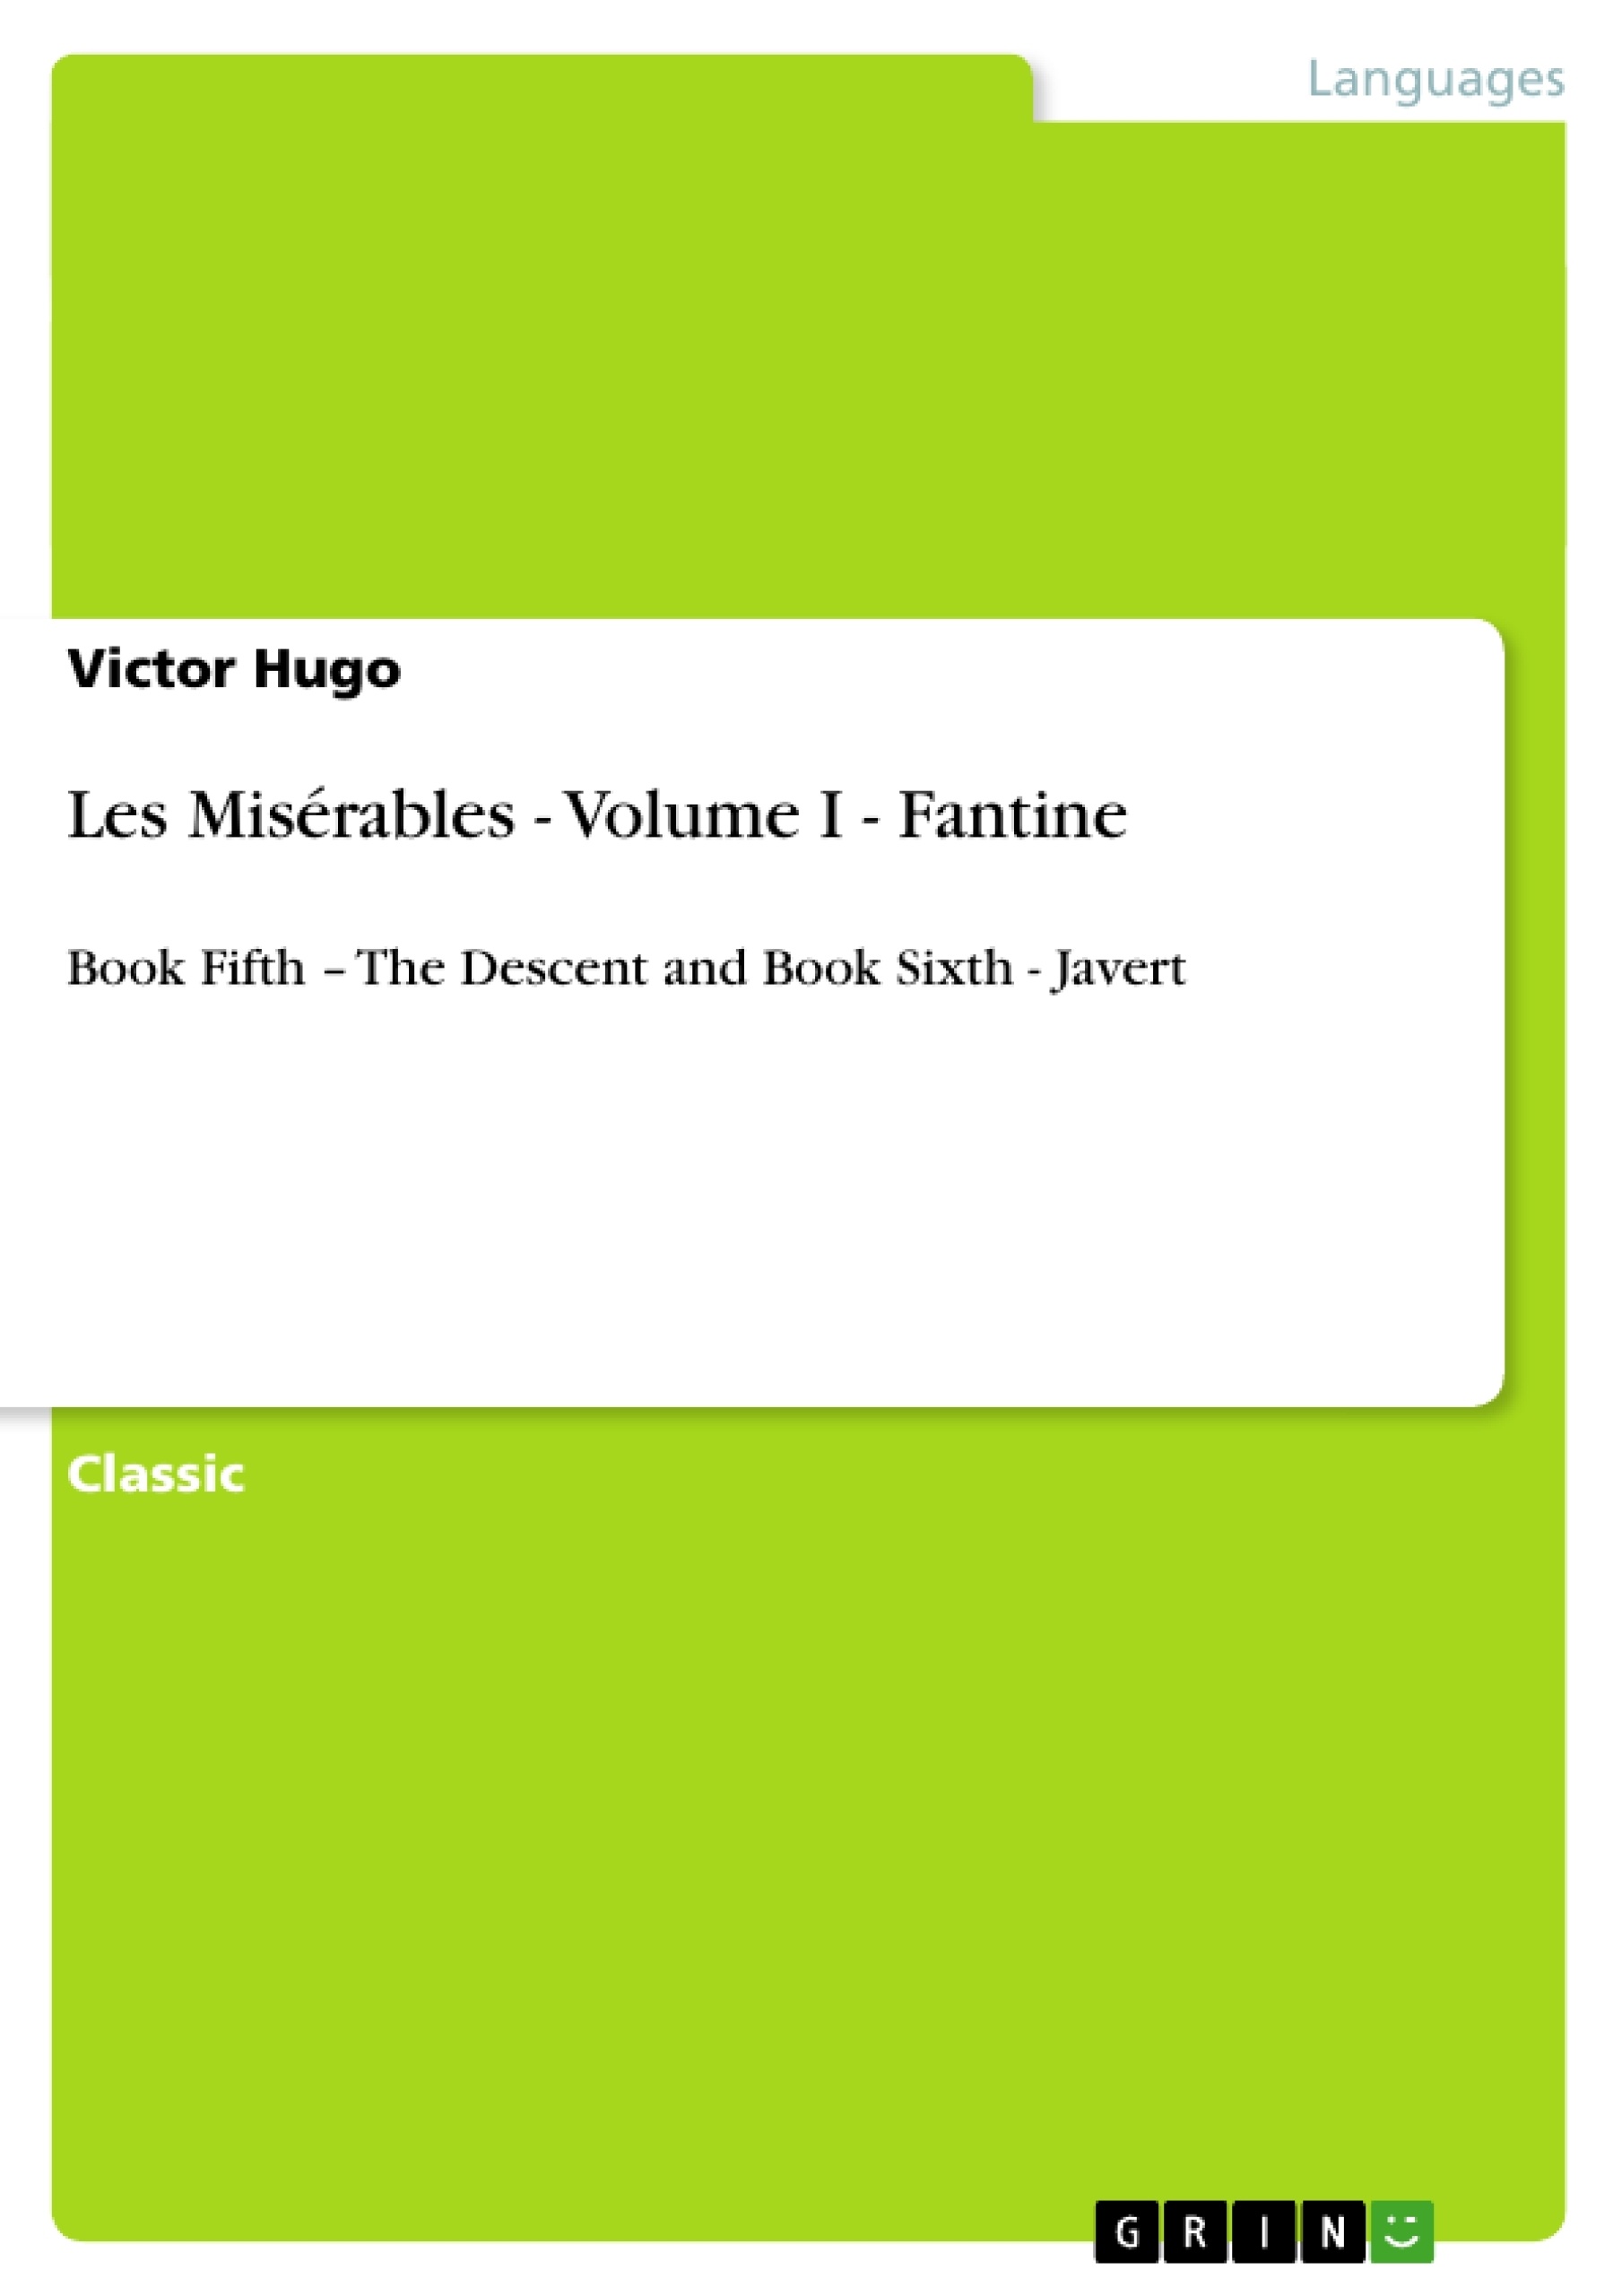 Title: Les Misérables - Volume I - Fantine